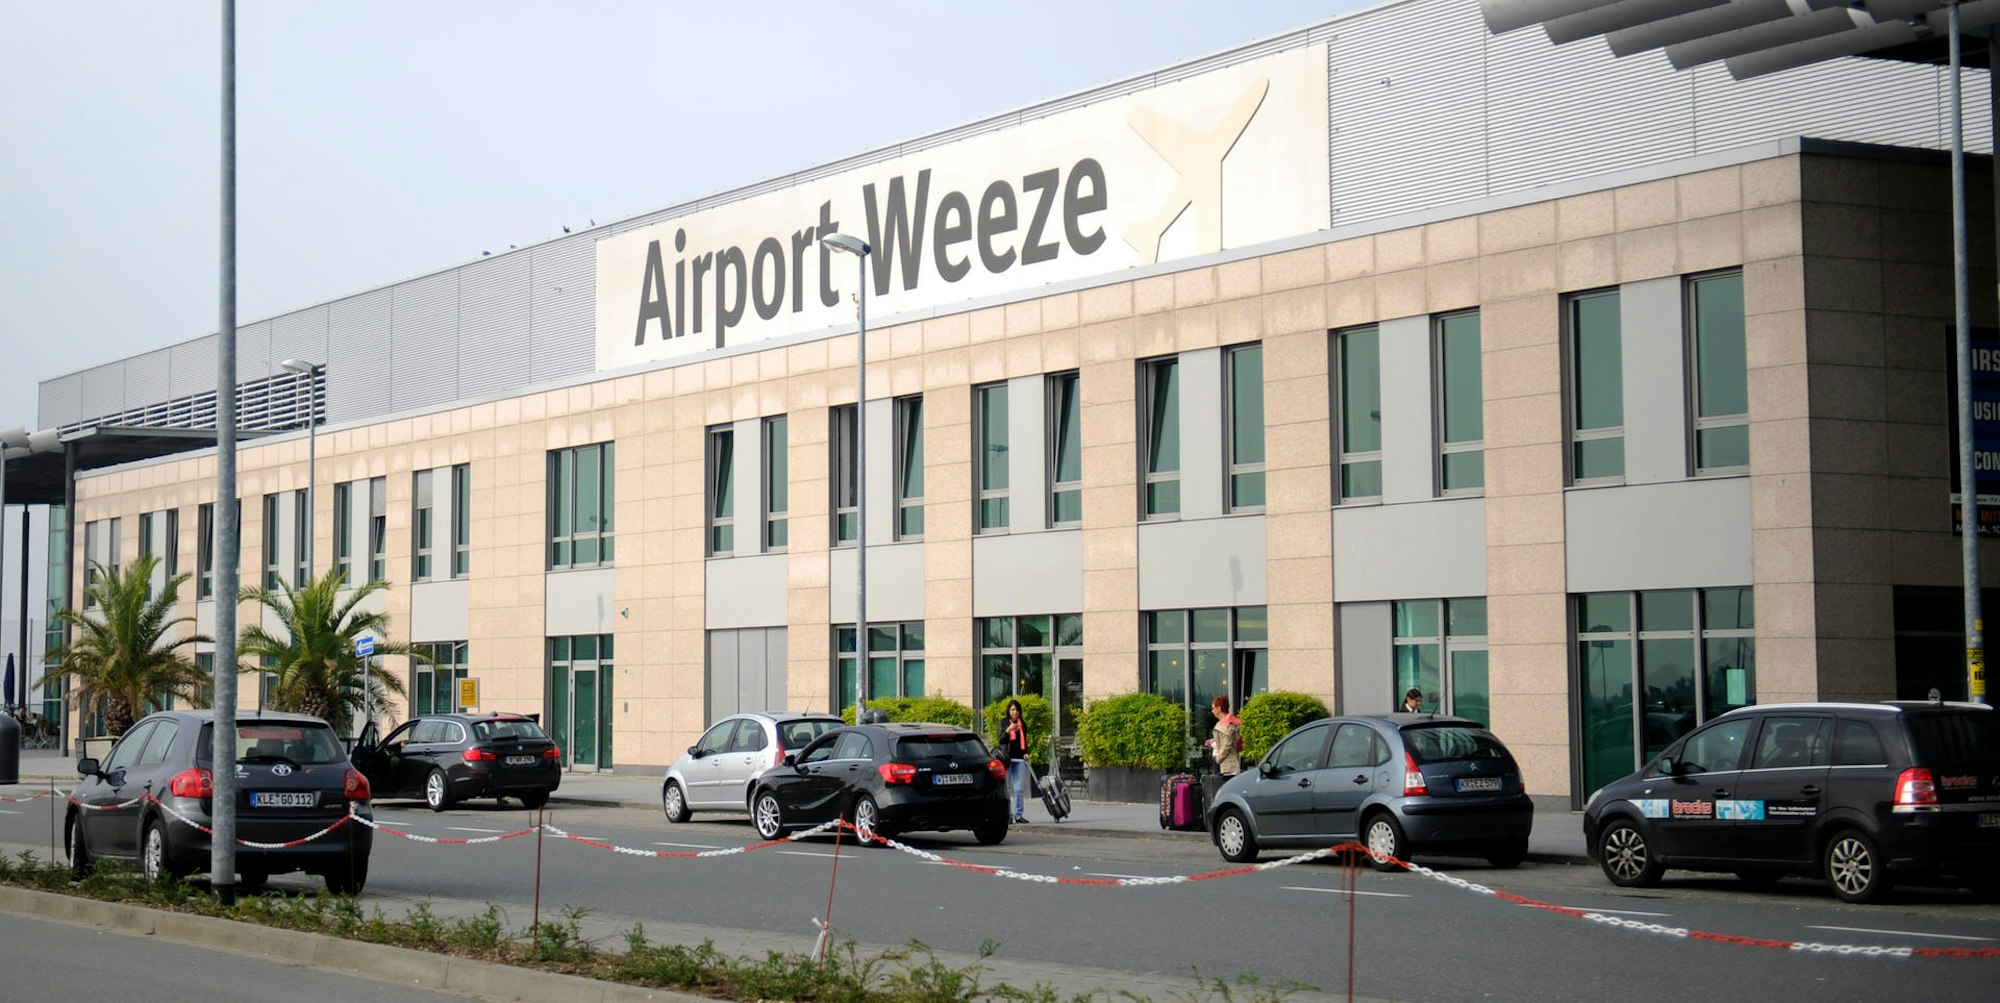 Flughafen_Weeze